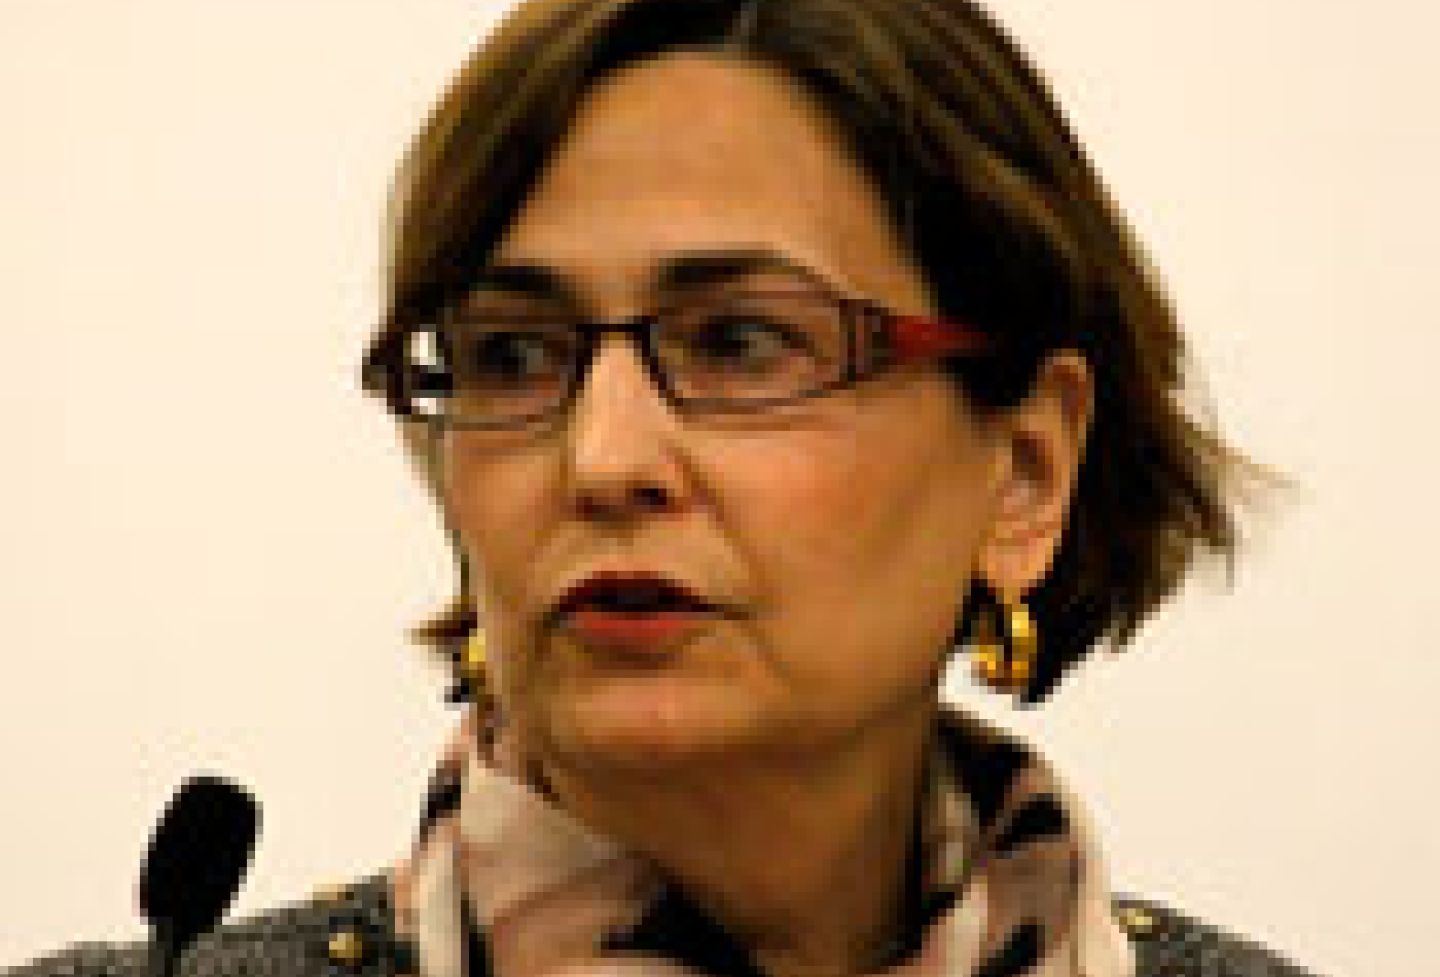 Susan Akram